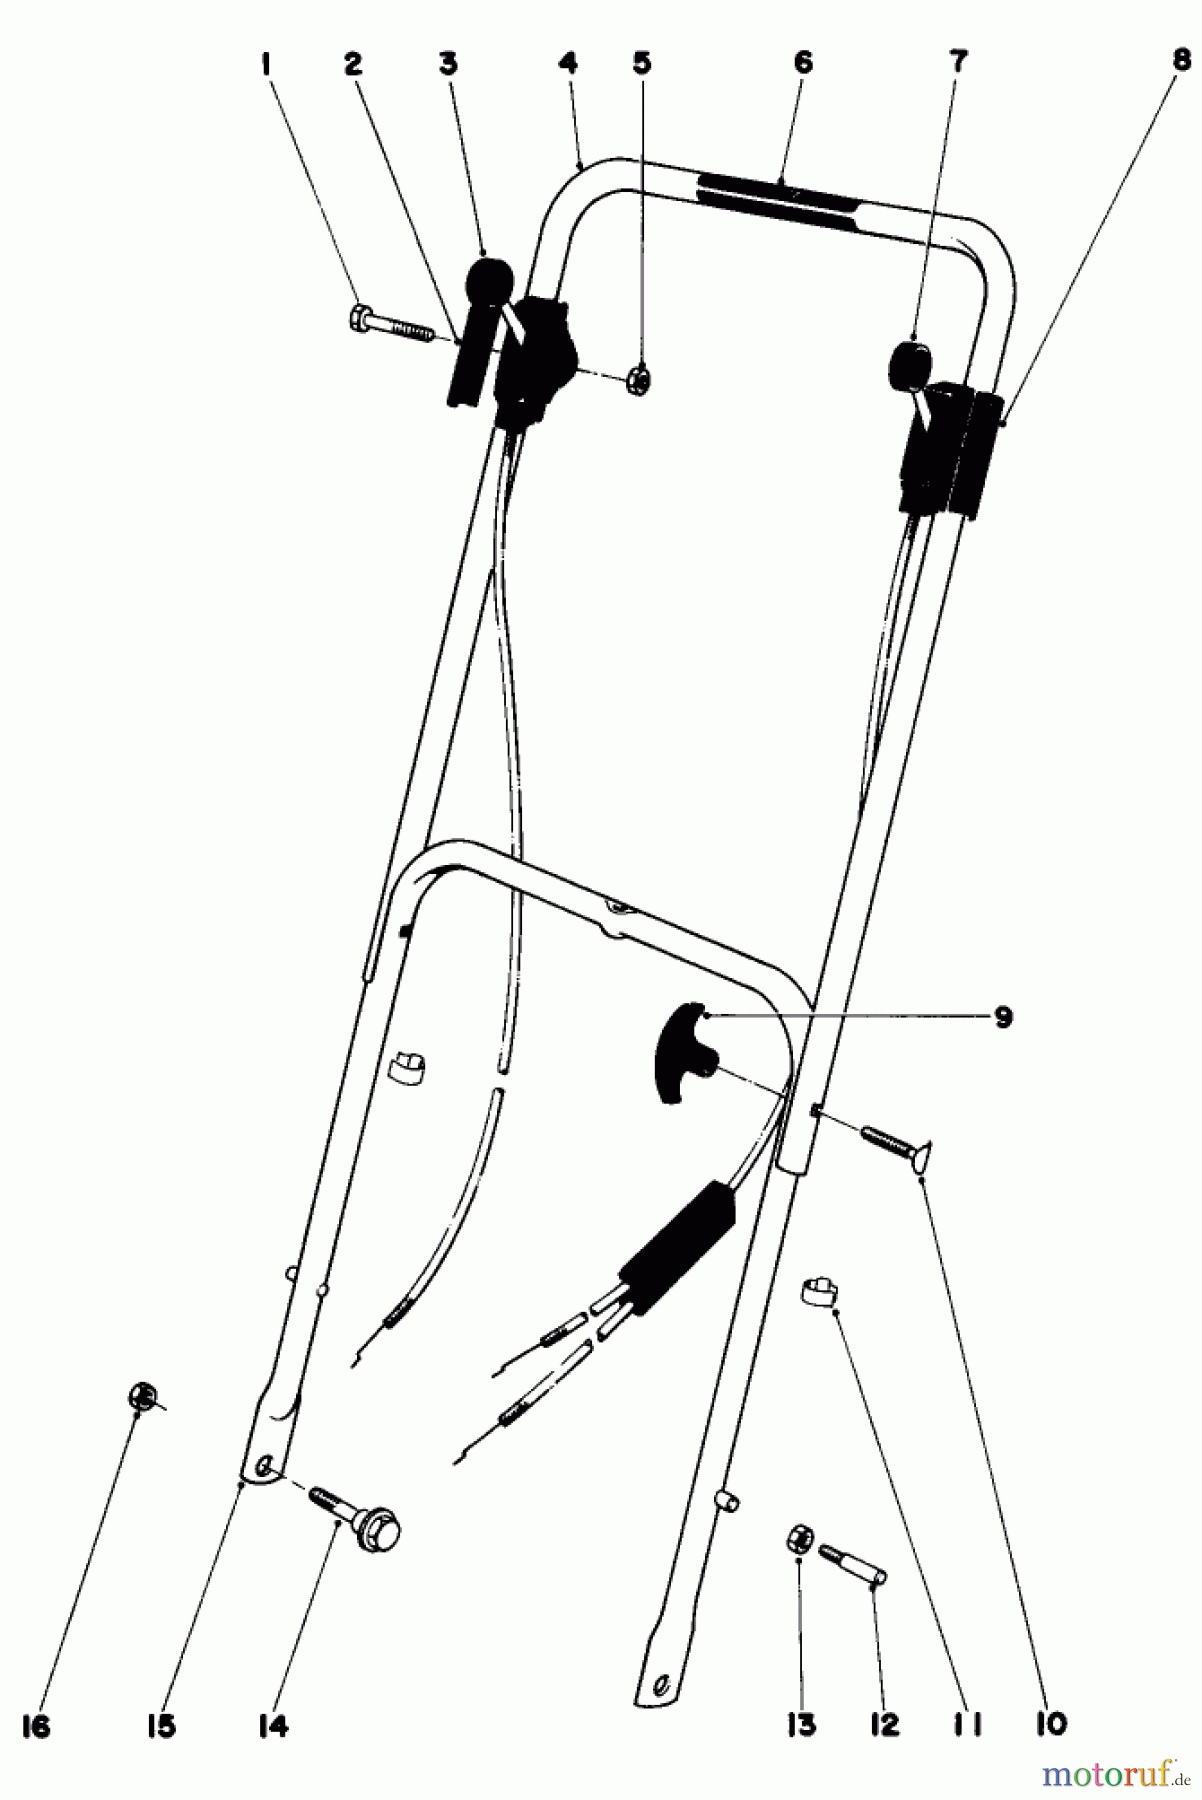  Toro Neu Mowers, Walk-Behind Seite 1 16113 - Toro Whirlwind II Lawnmower, 1979 (9000001-9999999) HANDLE ASSEMBLY 16227